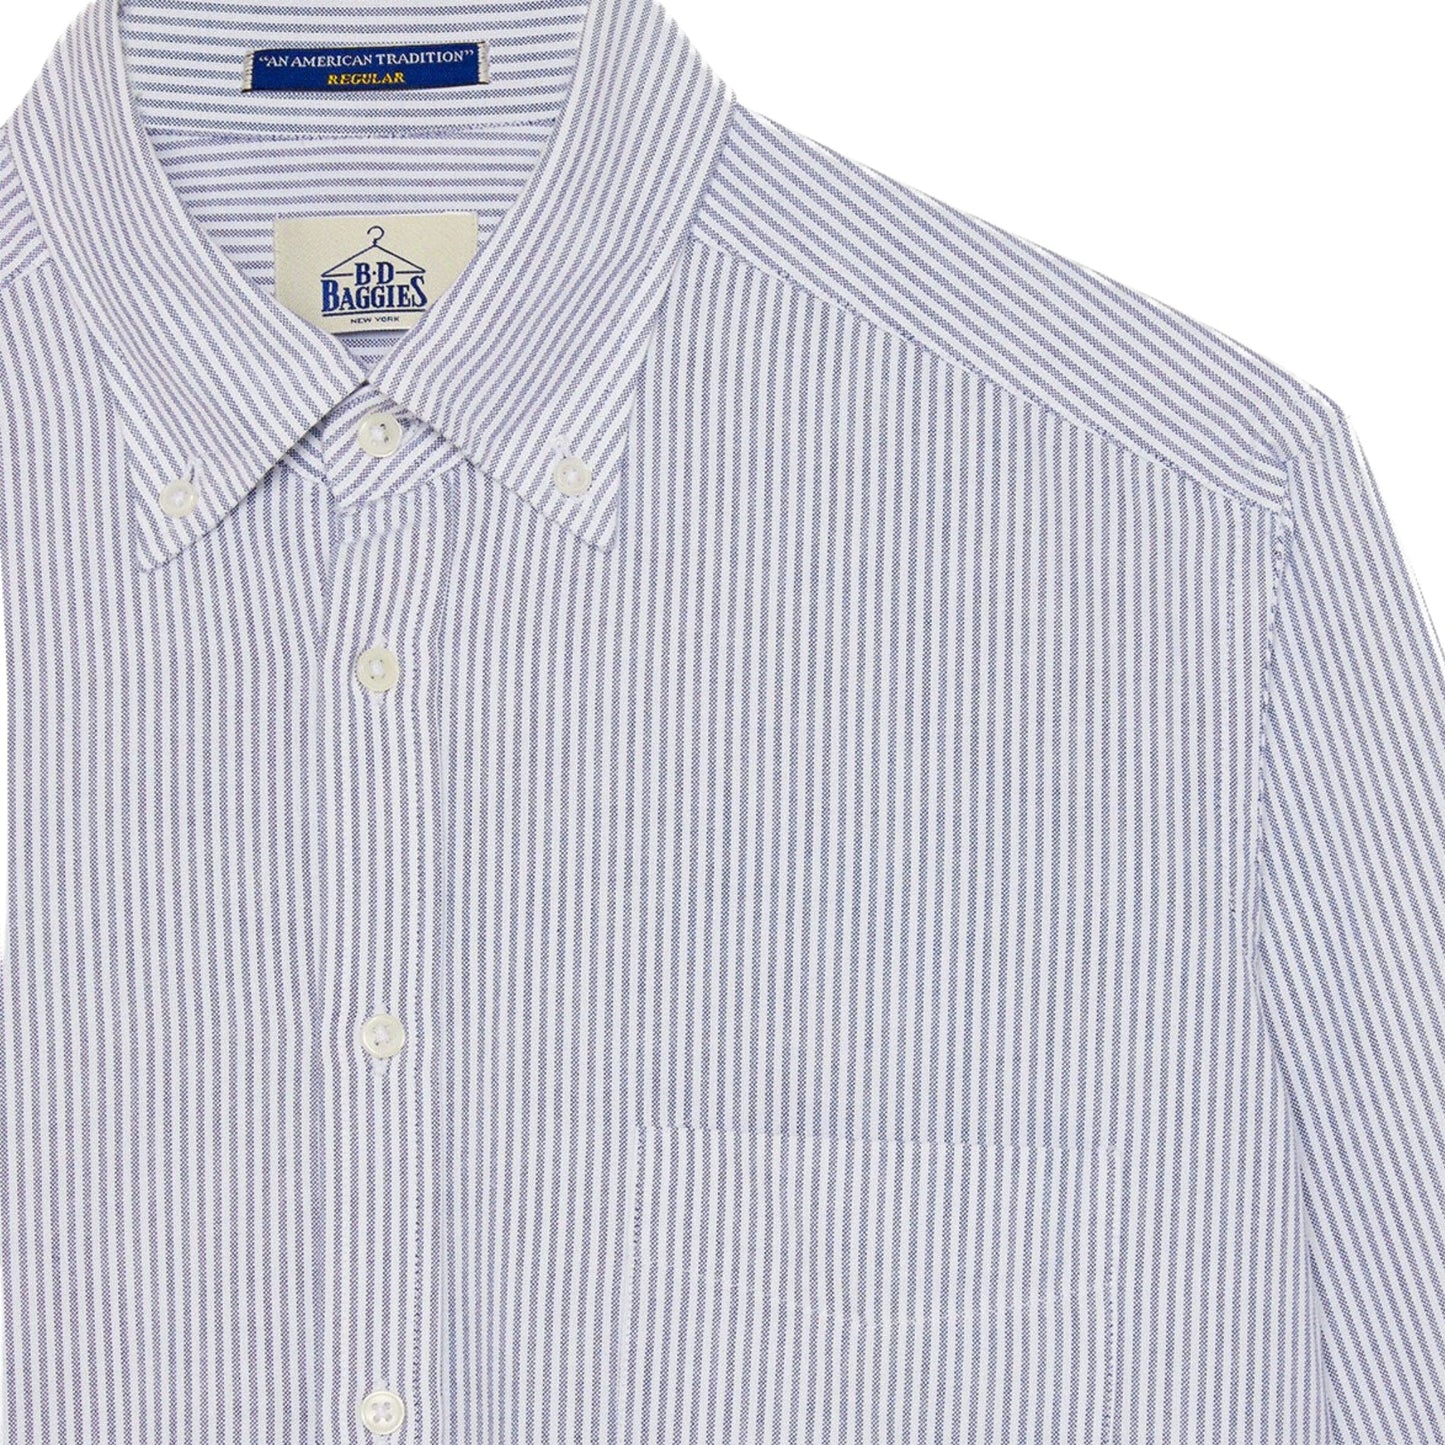 B.D. BAGGIES - Bradford Oxford Stripe Shirt